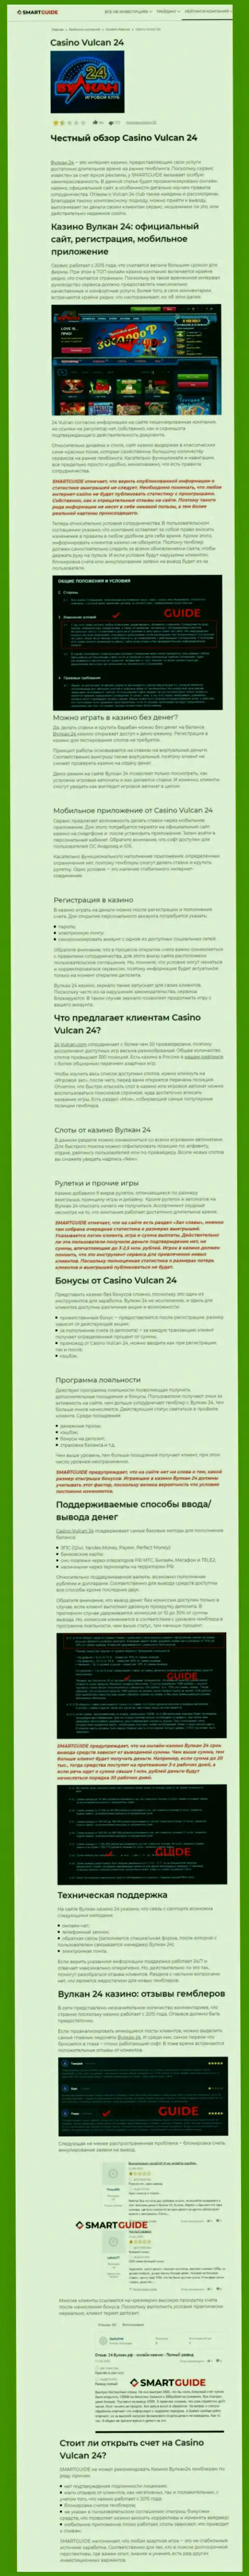 Вулкан 24 - это компания, которая зарабатывает на воровстве финансовых активов своих клиентов (обзор афер)